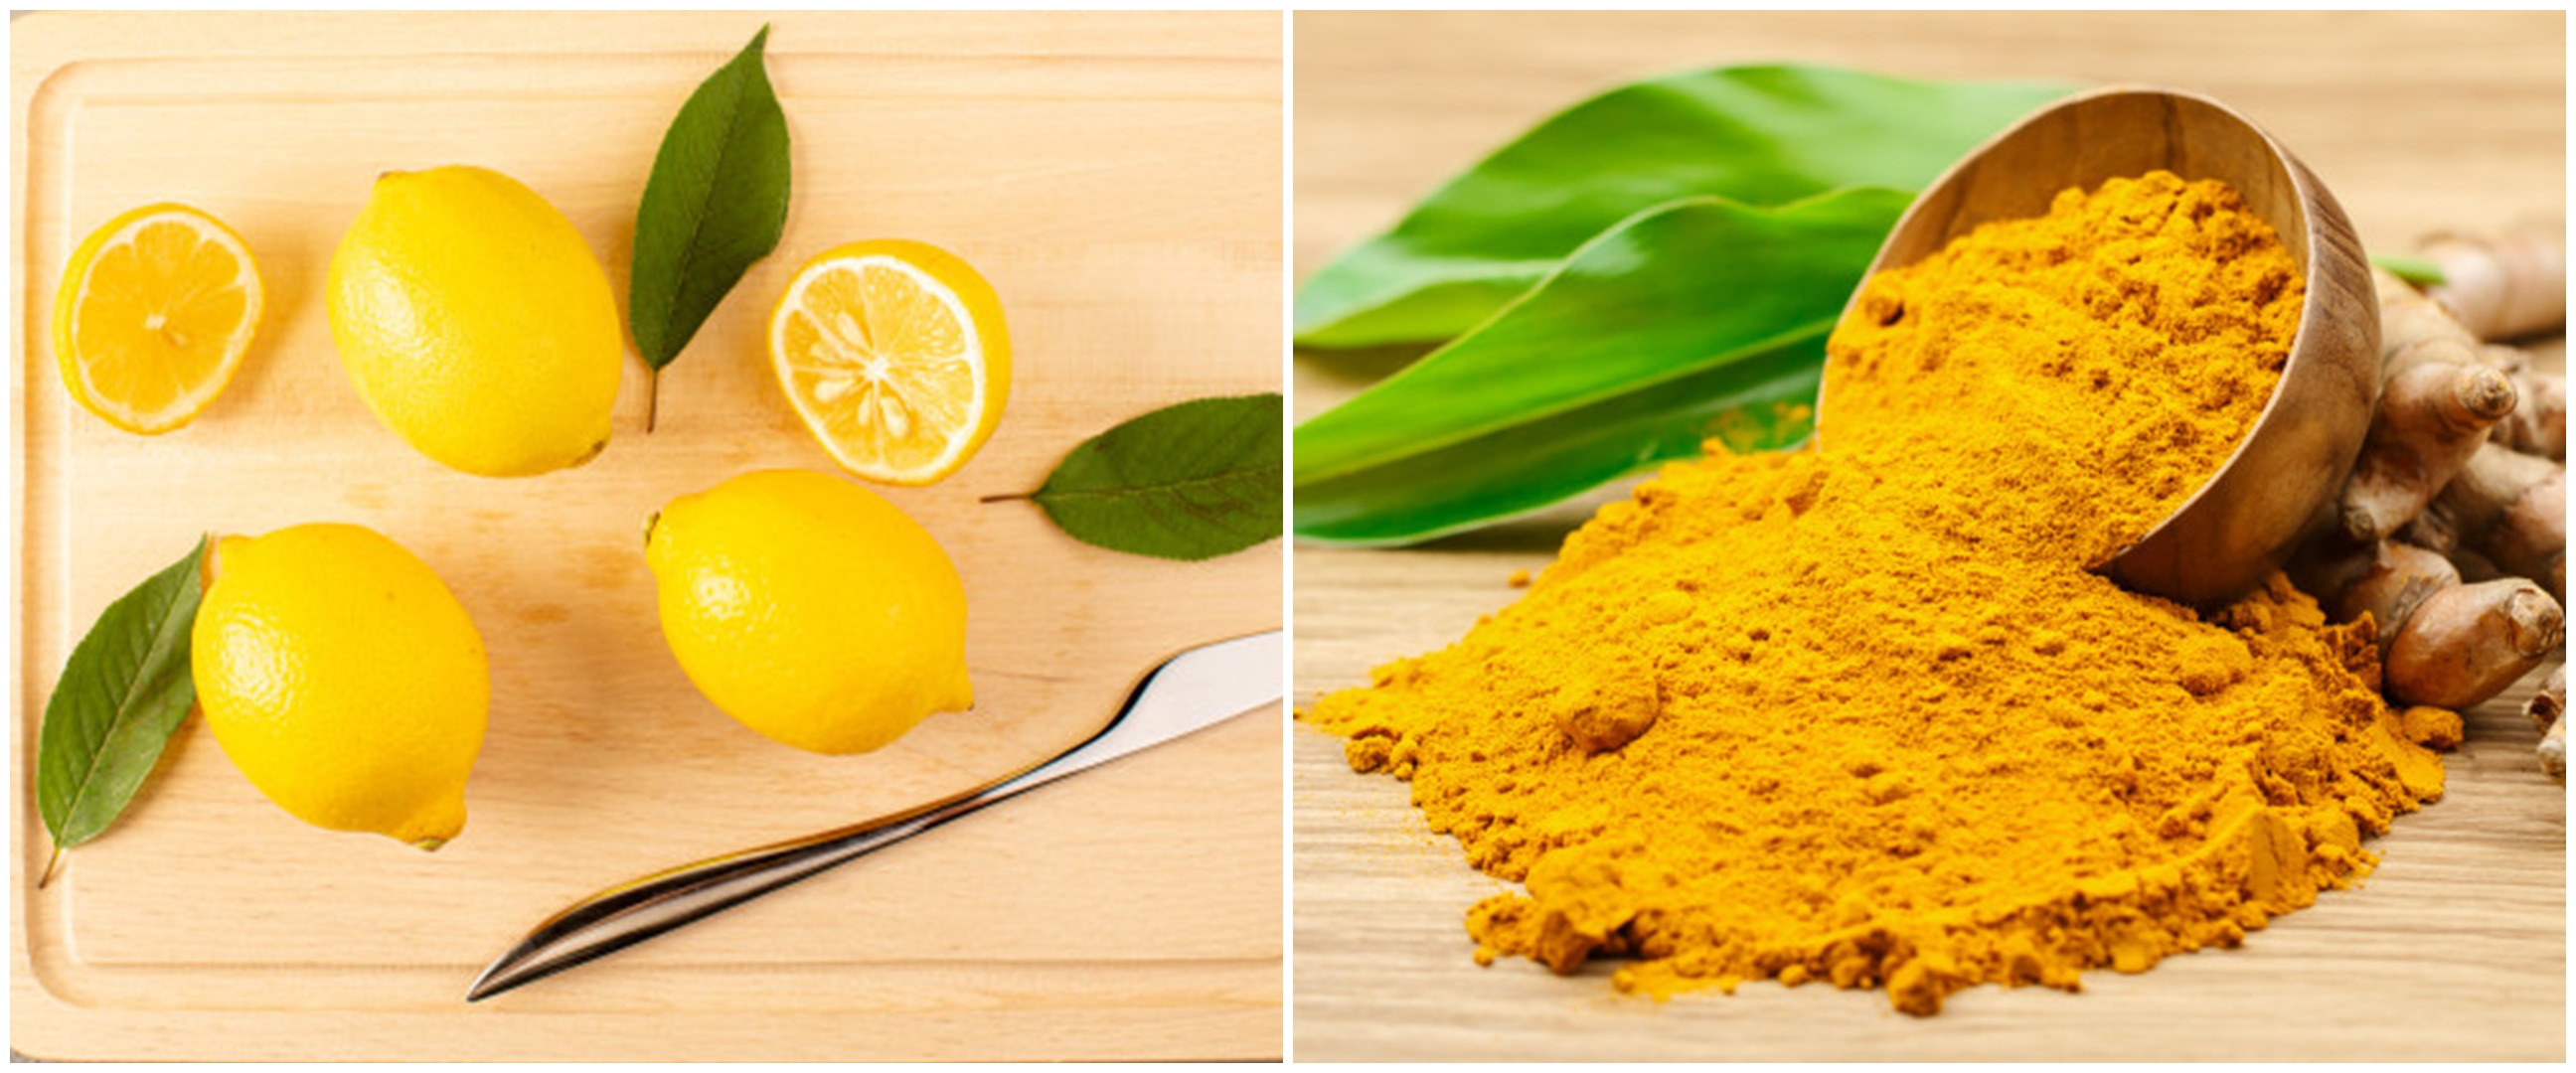 6 Manfaat lemon dan kunyit untuk kesehatan, solusi diet alami